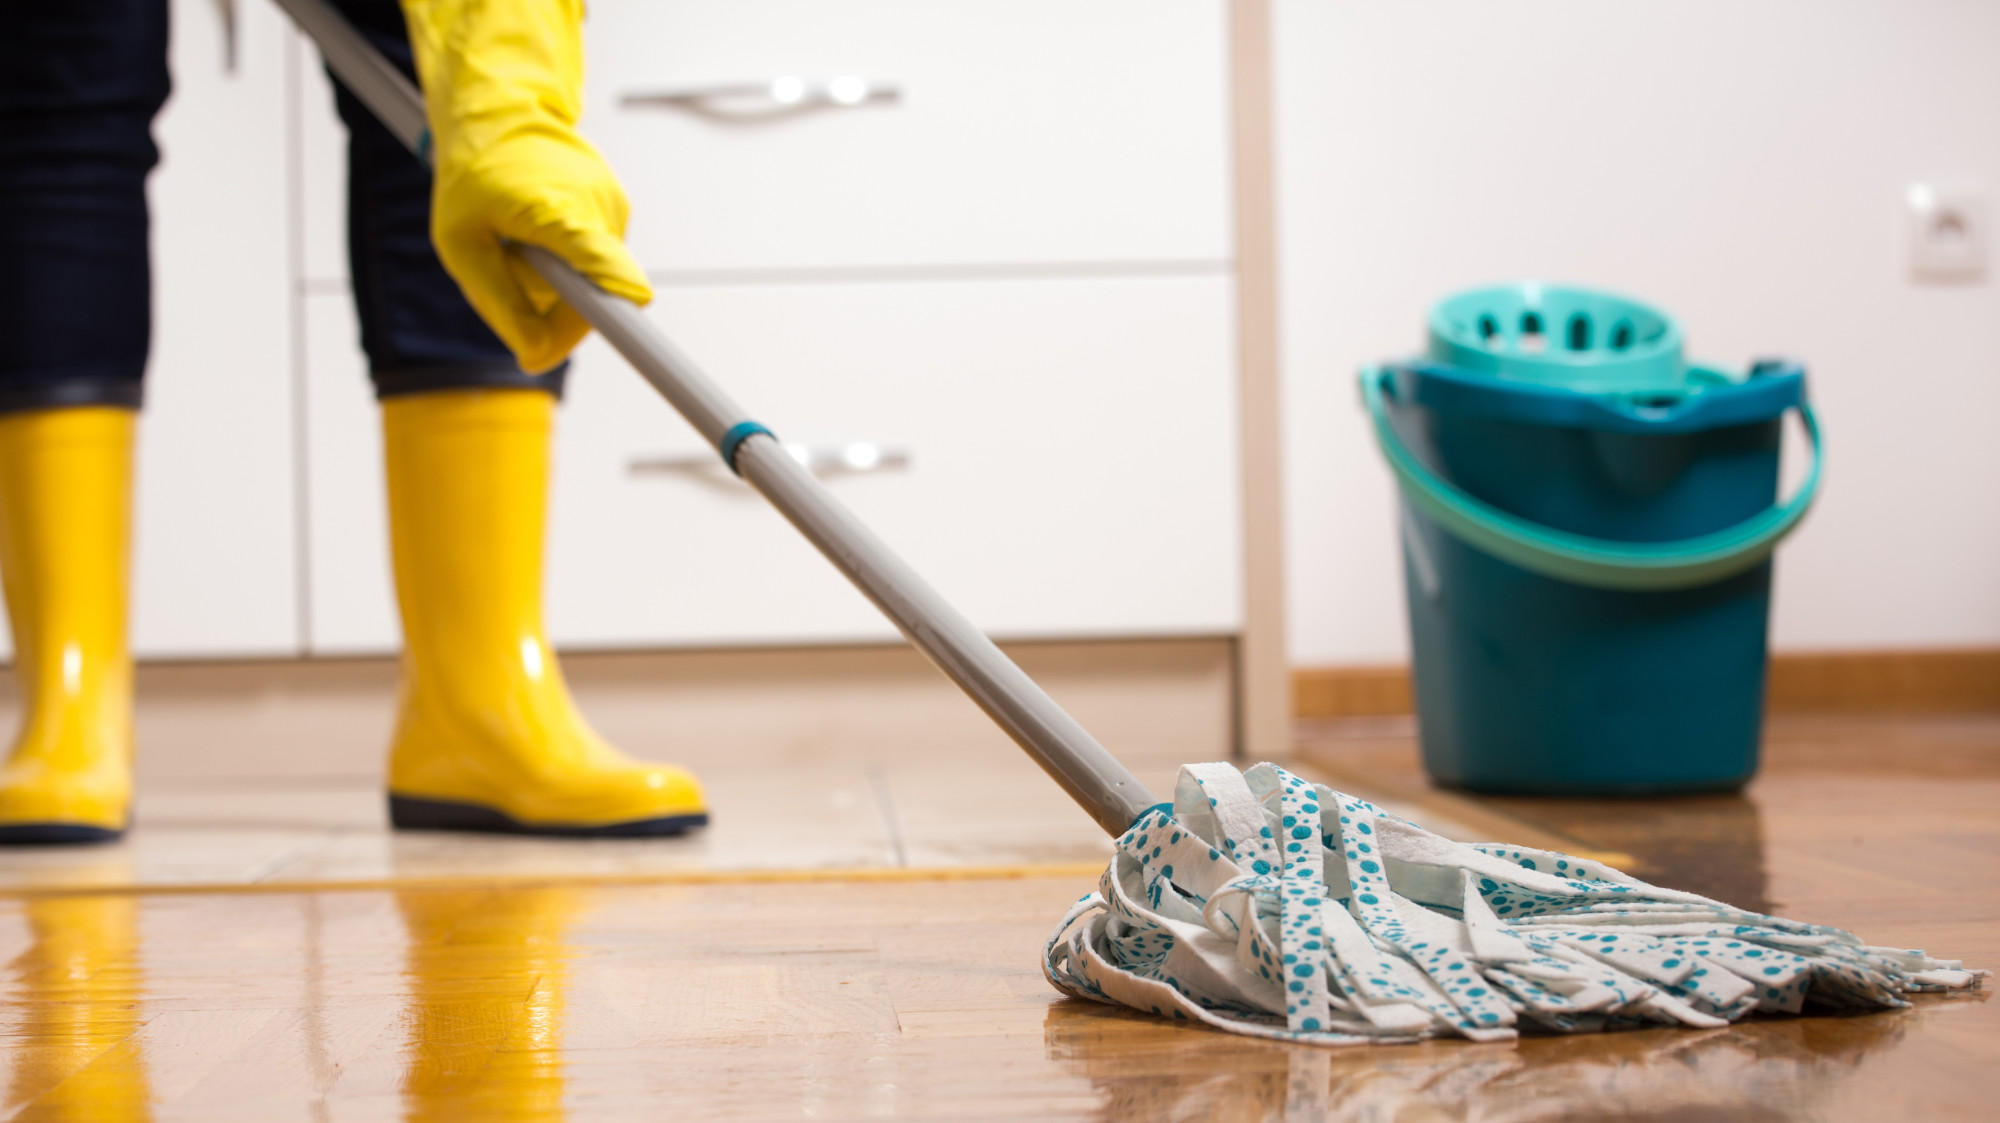 Mopping Makes Floors Less Slippery